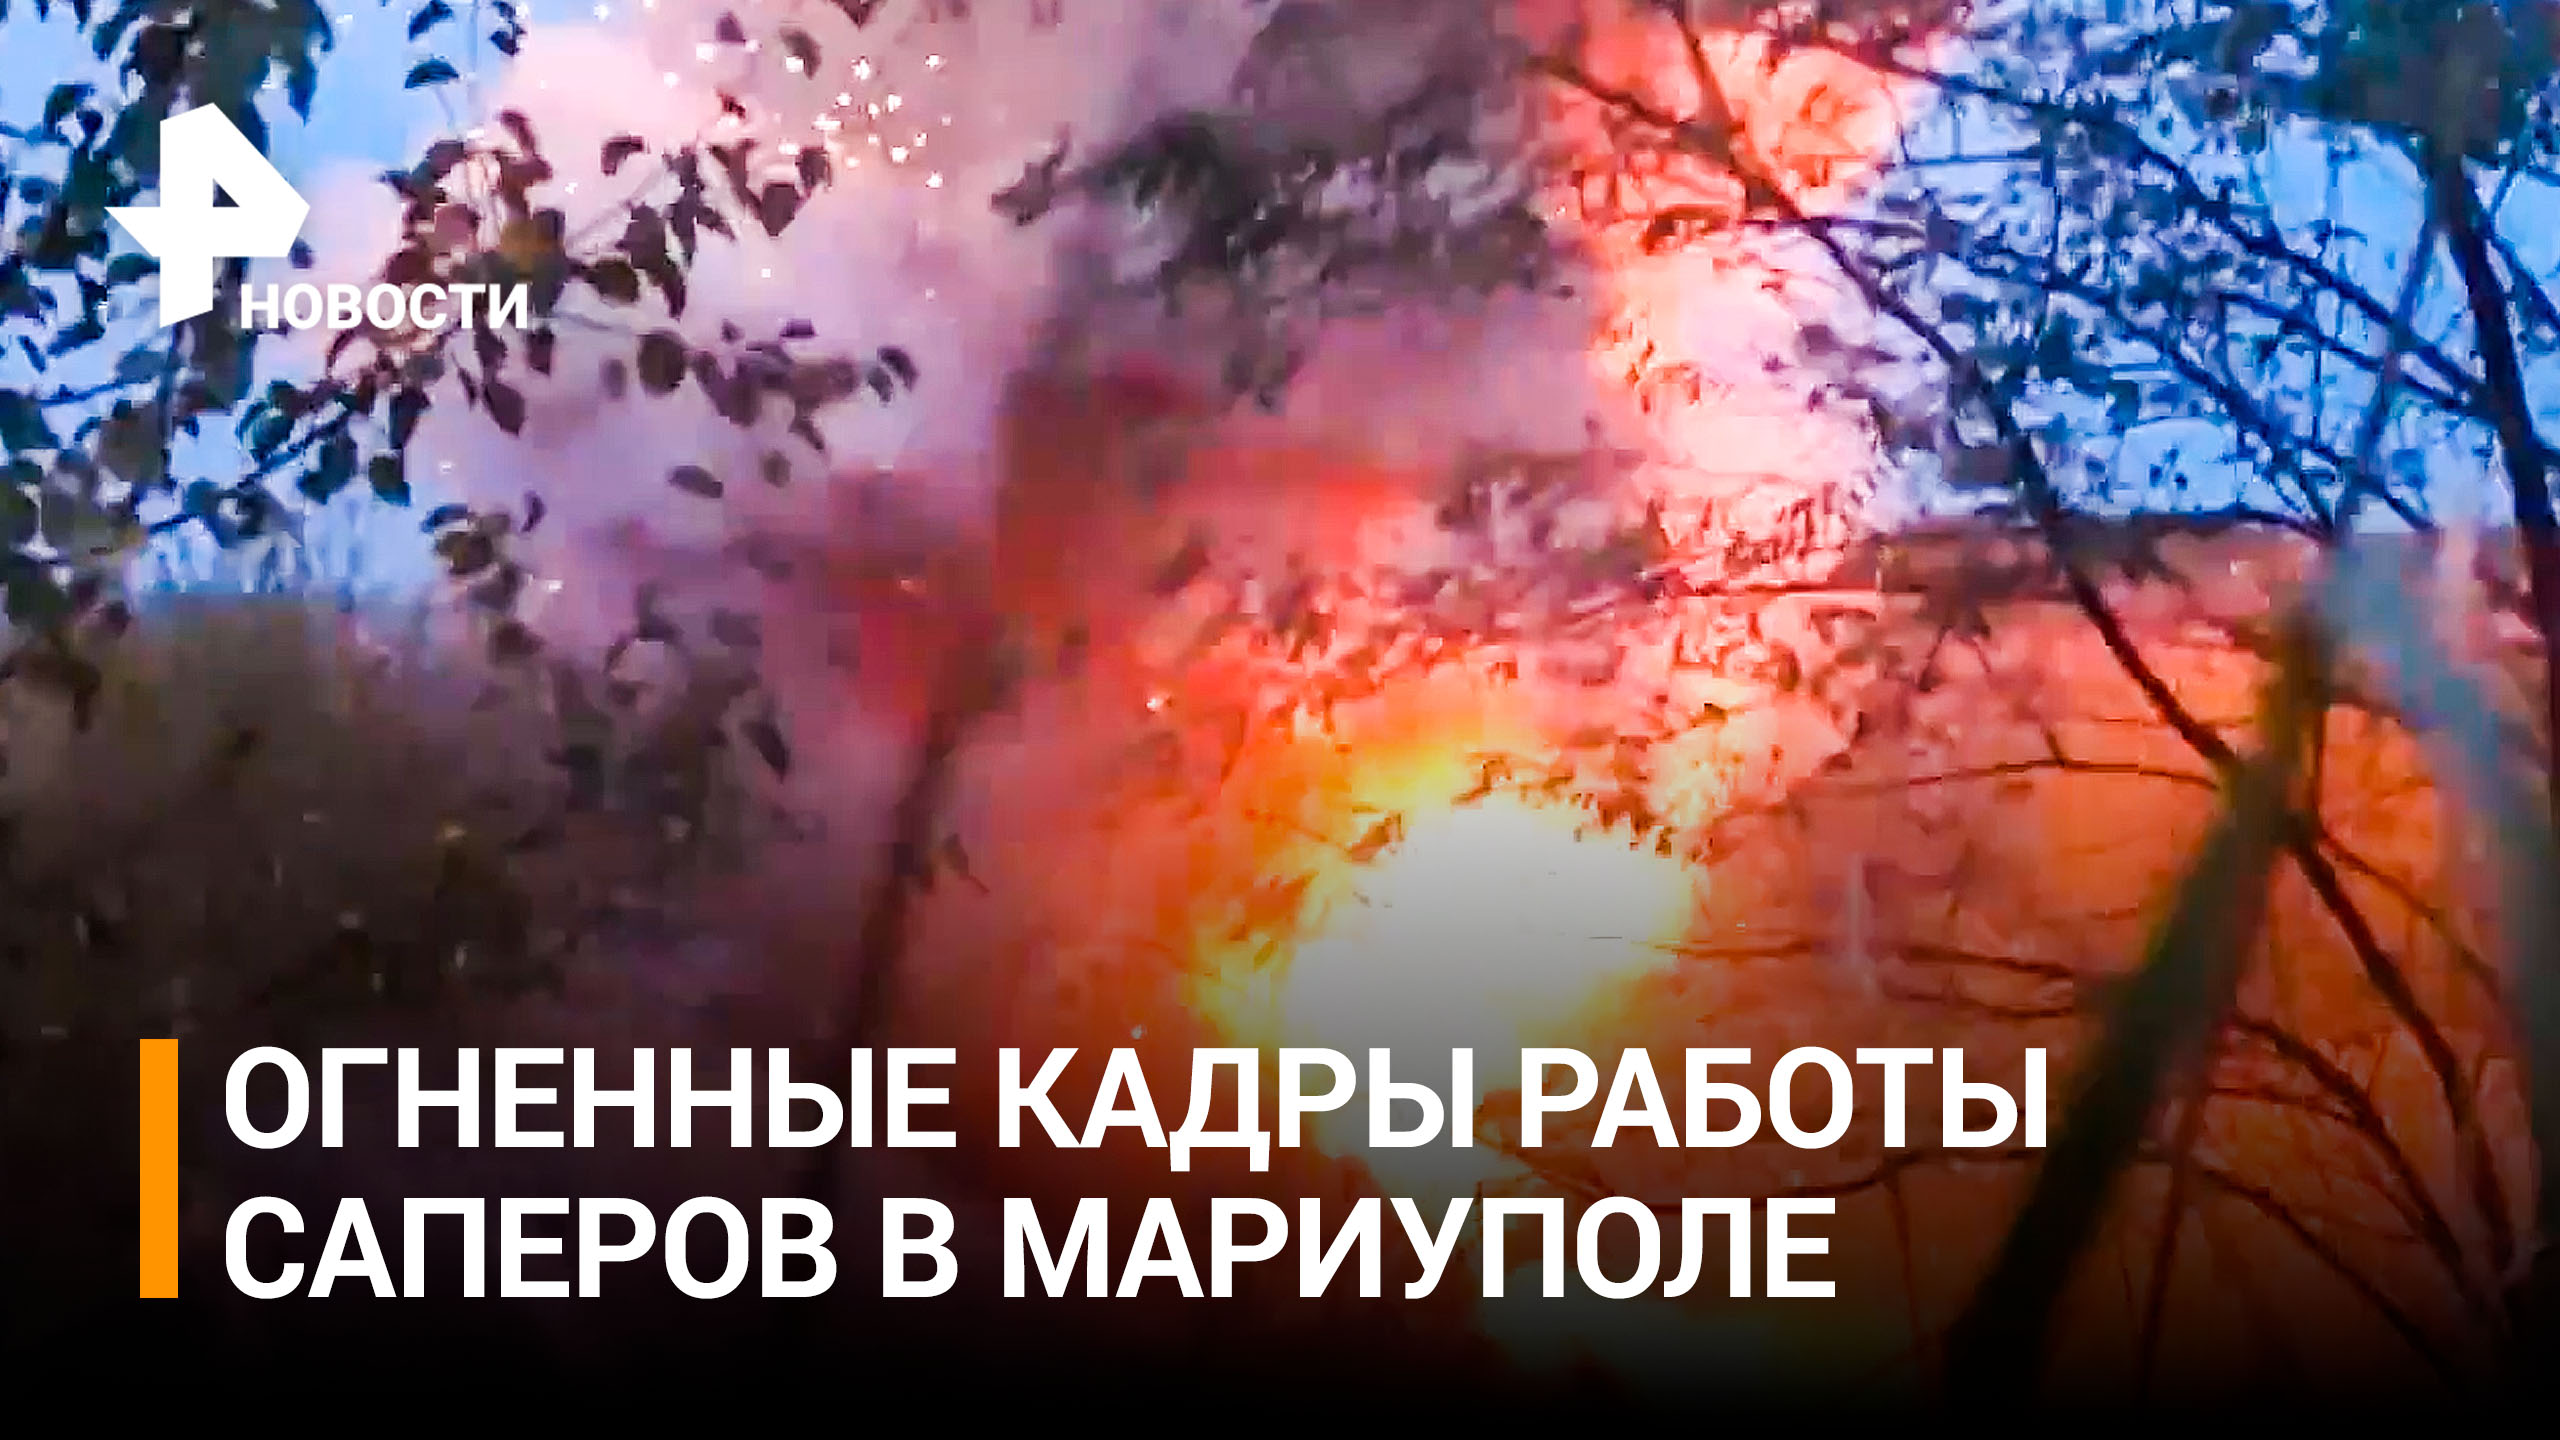 Саперы уничтожили разбросанные по Мариуполю мины ВСУ / РЕН Новости